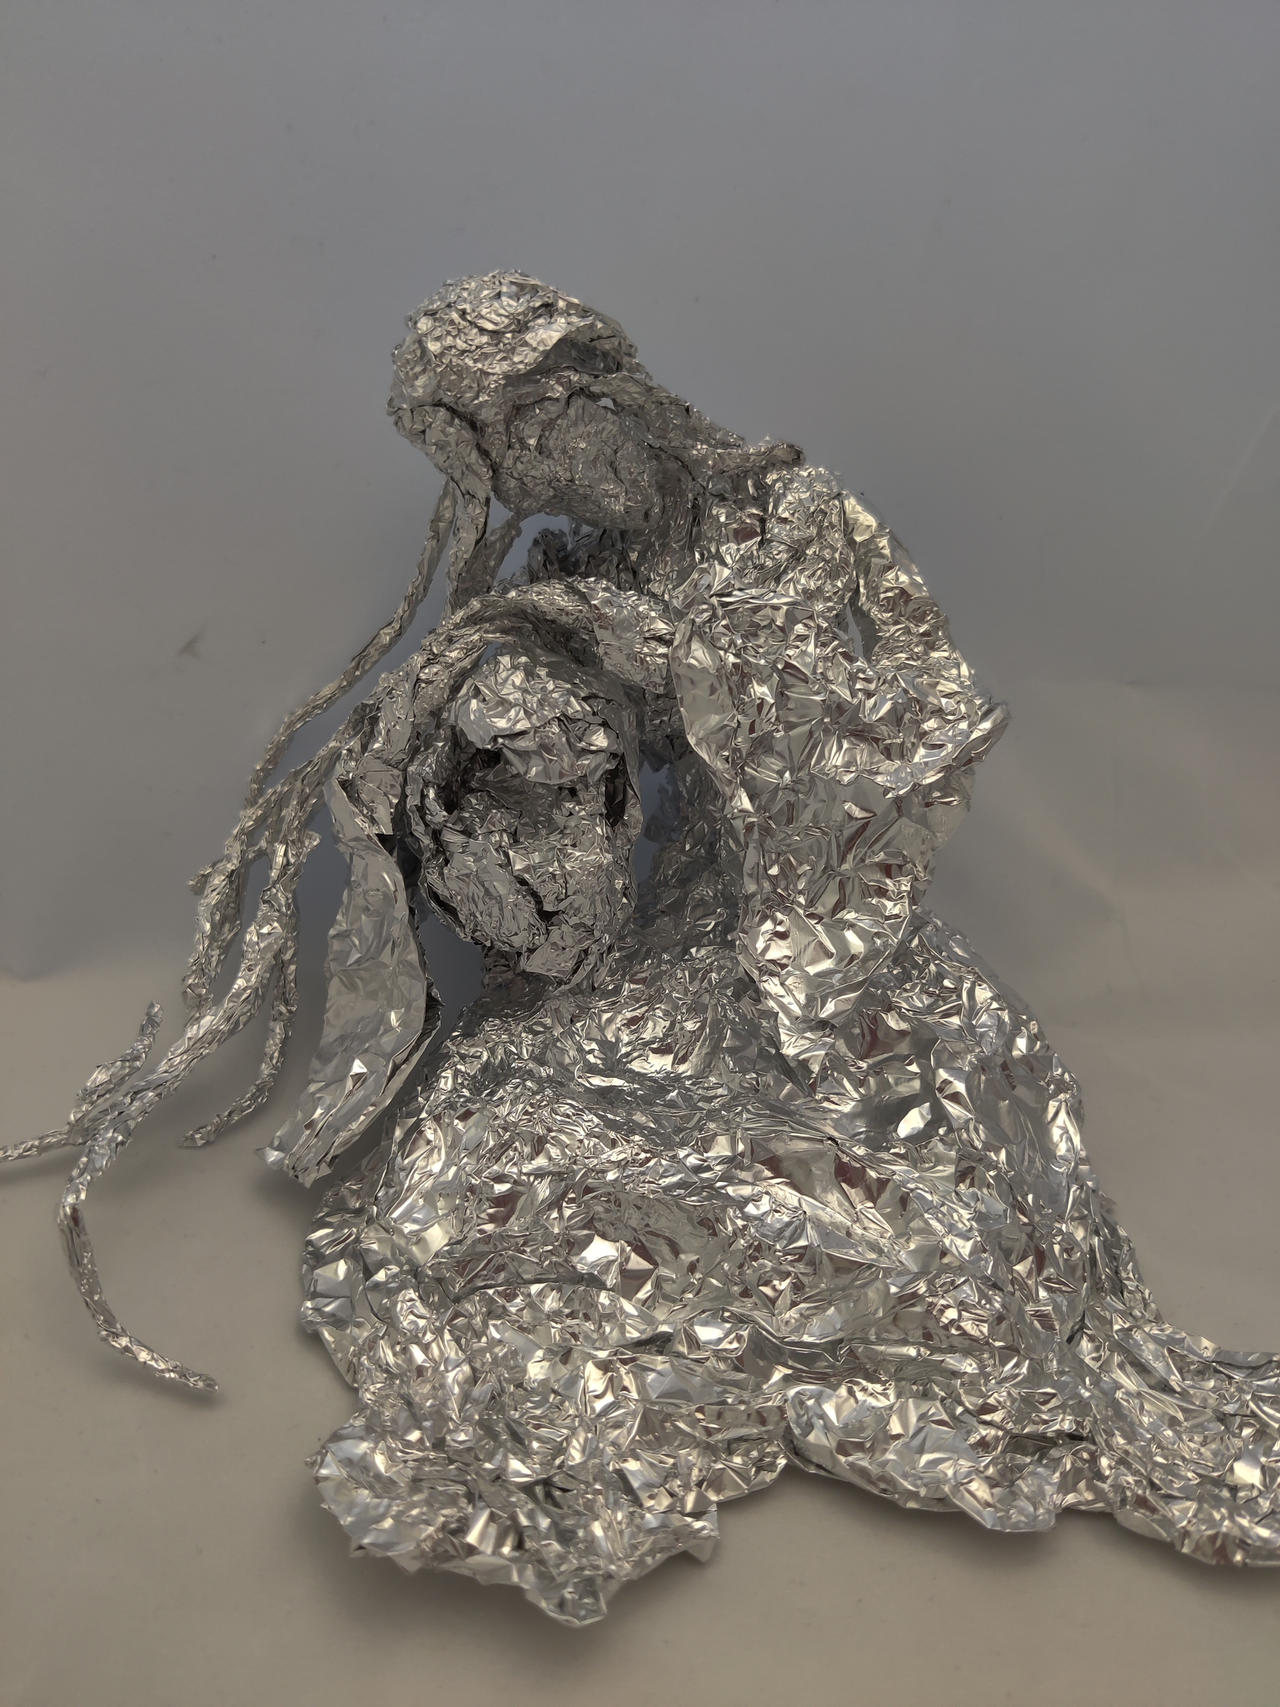 Filianore - Aluminum Foil Sculpture by TheFoilGuy on DeviantArt